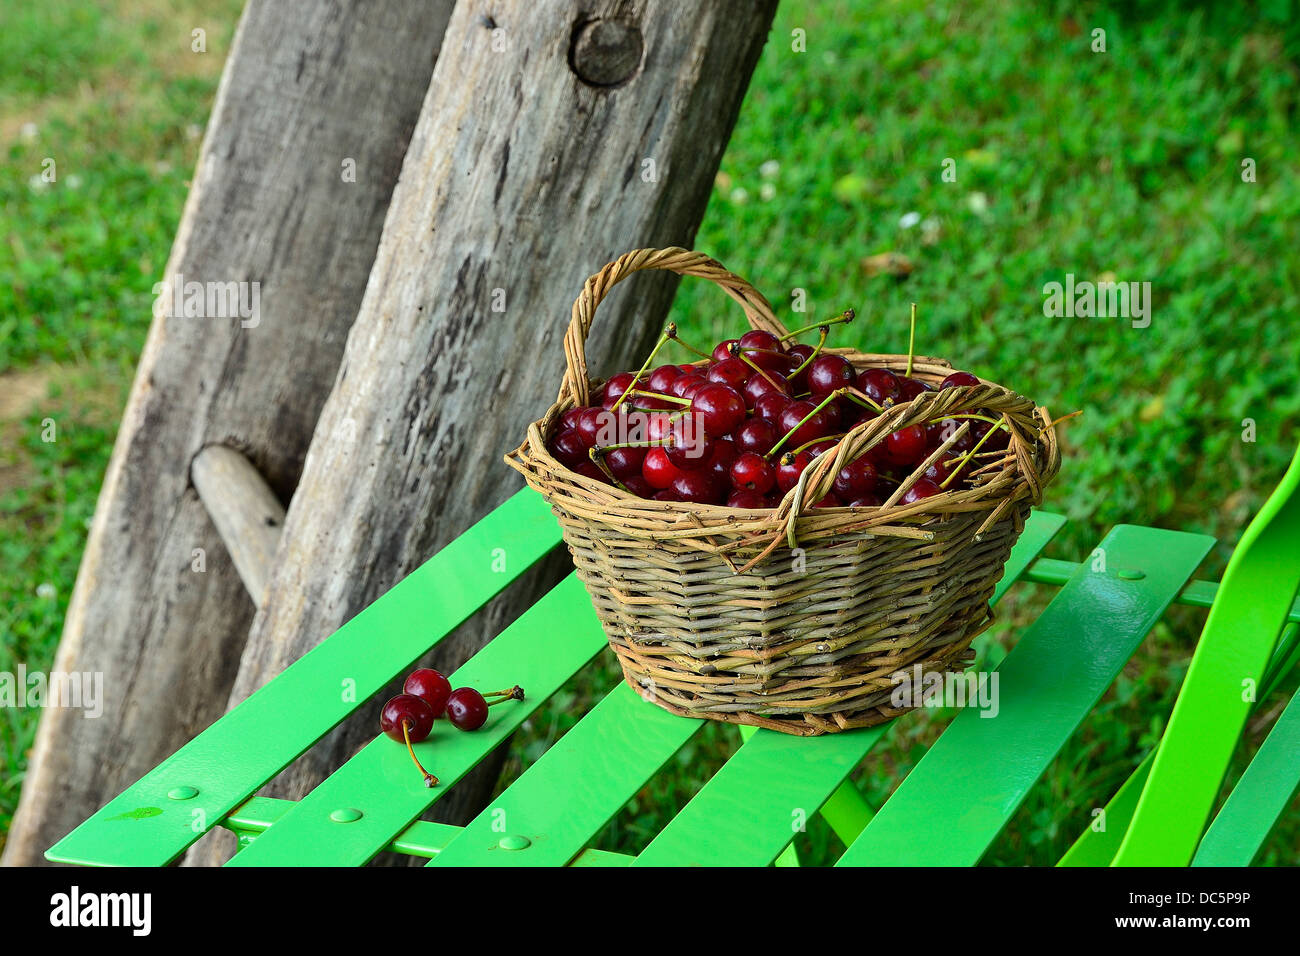 La récolte des cerises cerises morello ou sour (Prunus cerasus) dans le jardin en juin. Banque D'Images